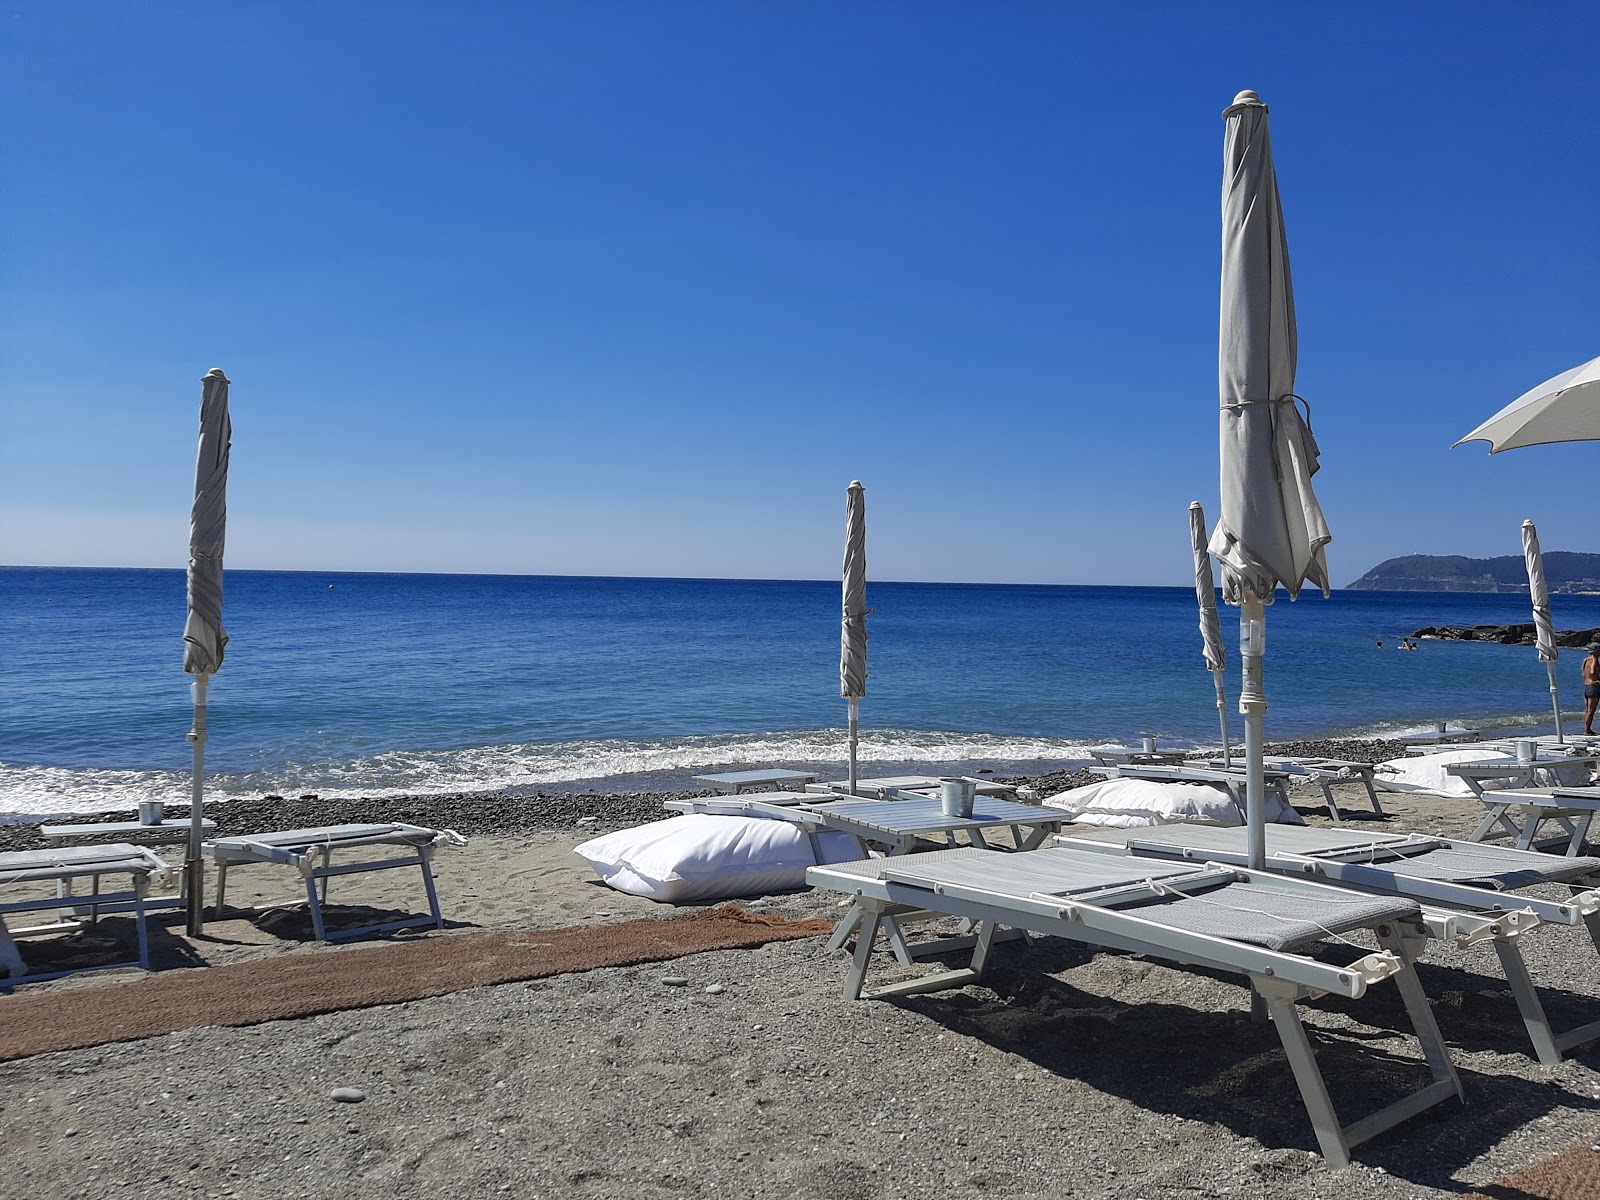 Spiaggia libera Alassio的照片 - 受到放松专家欢迎的热门地点